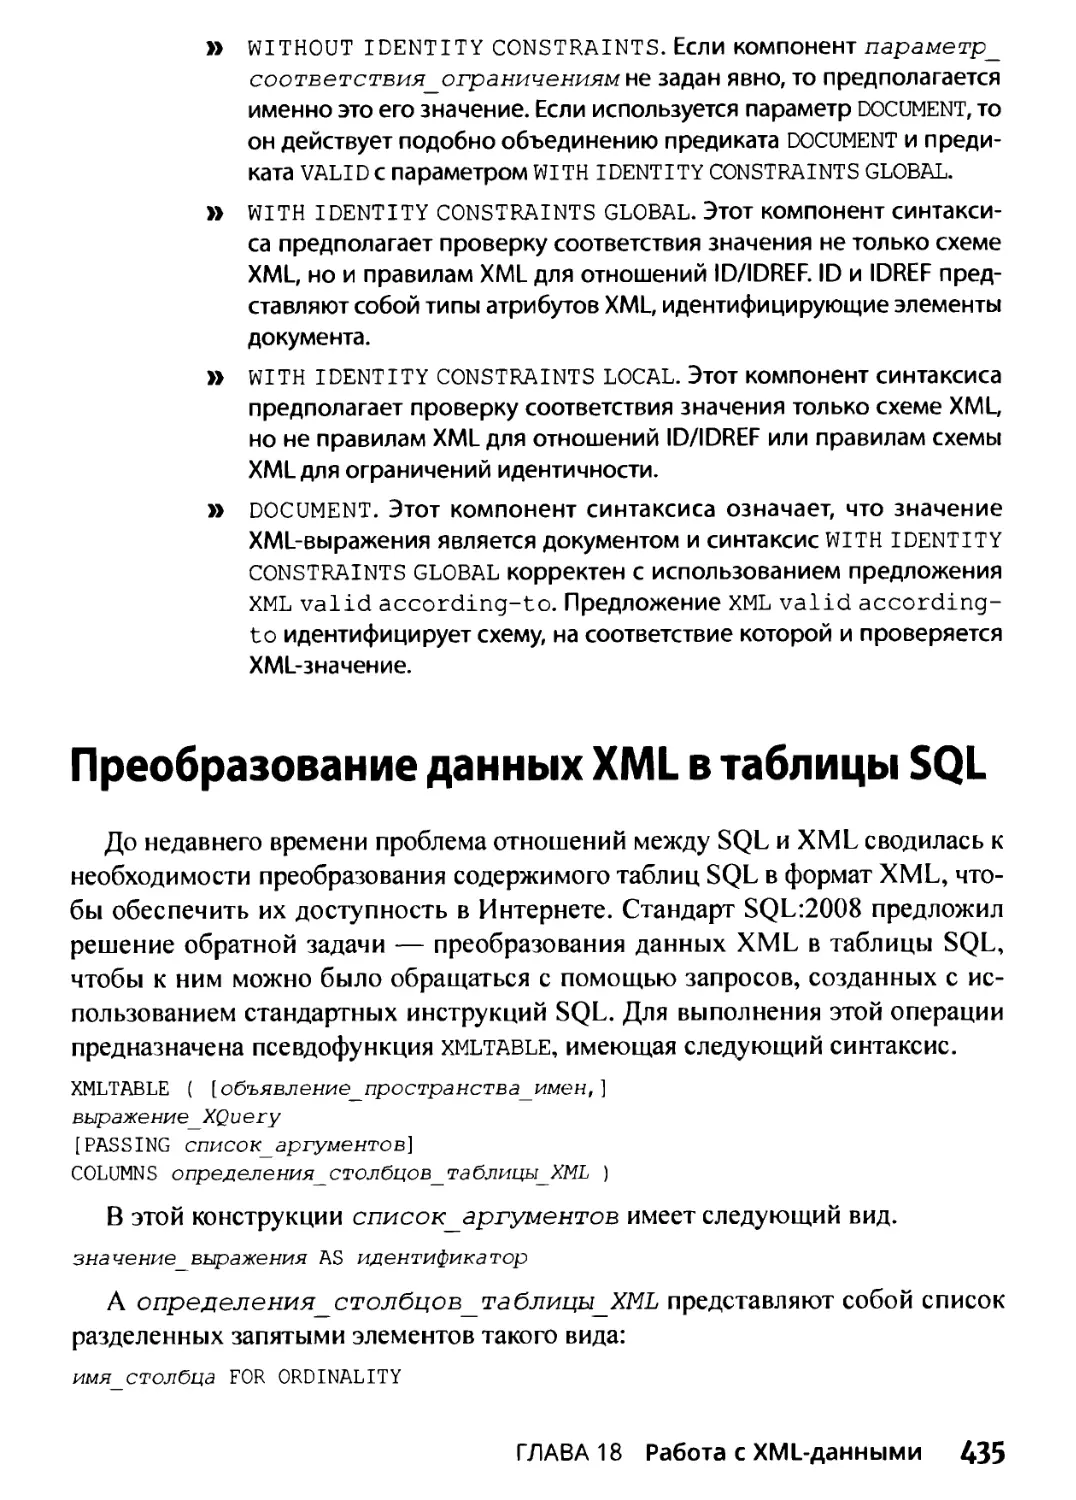 Преобразование данных XML в таблицы SQL